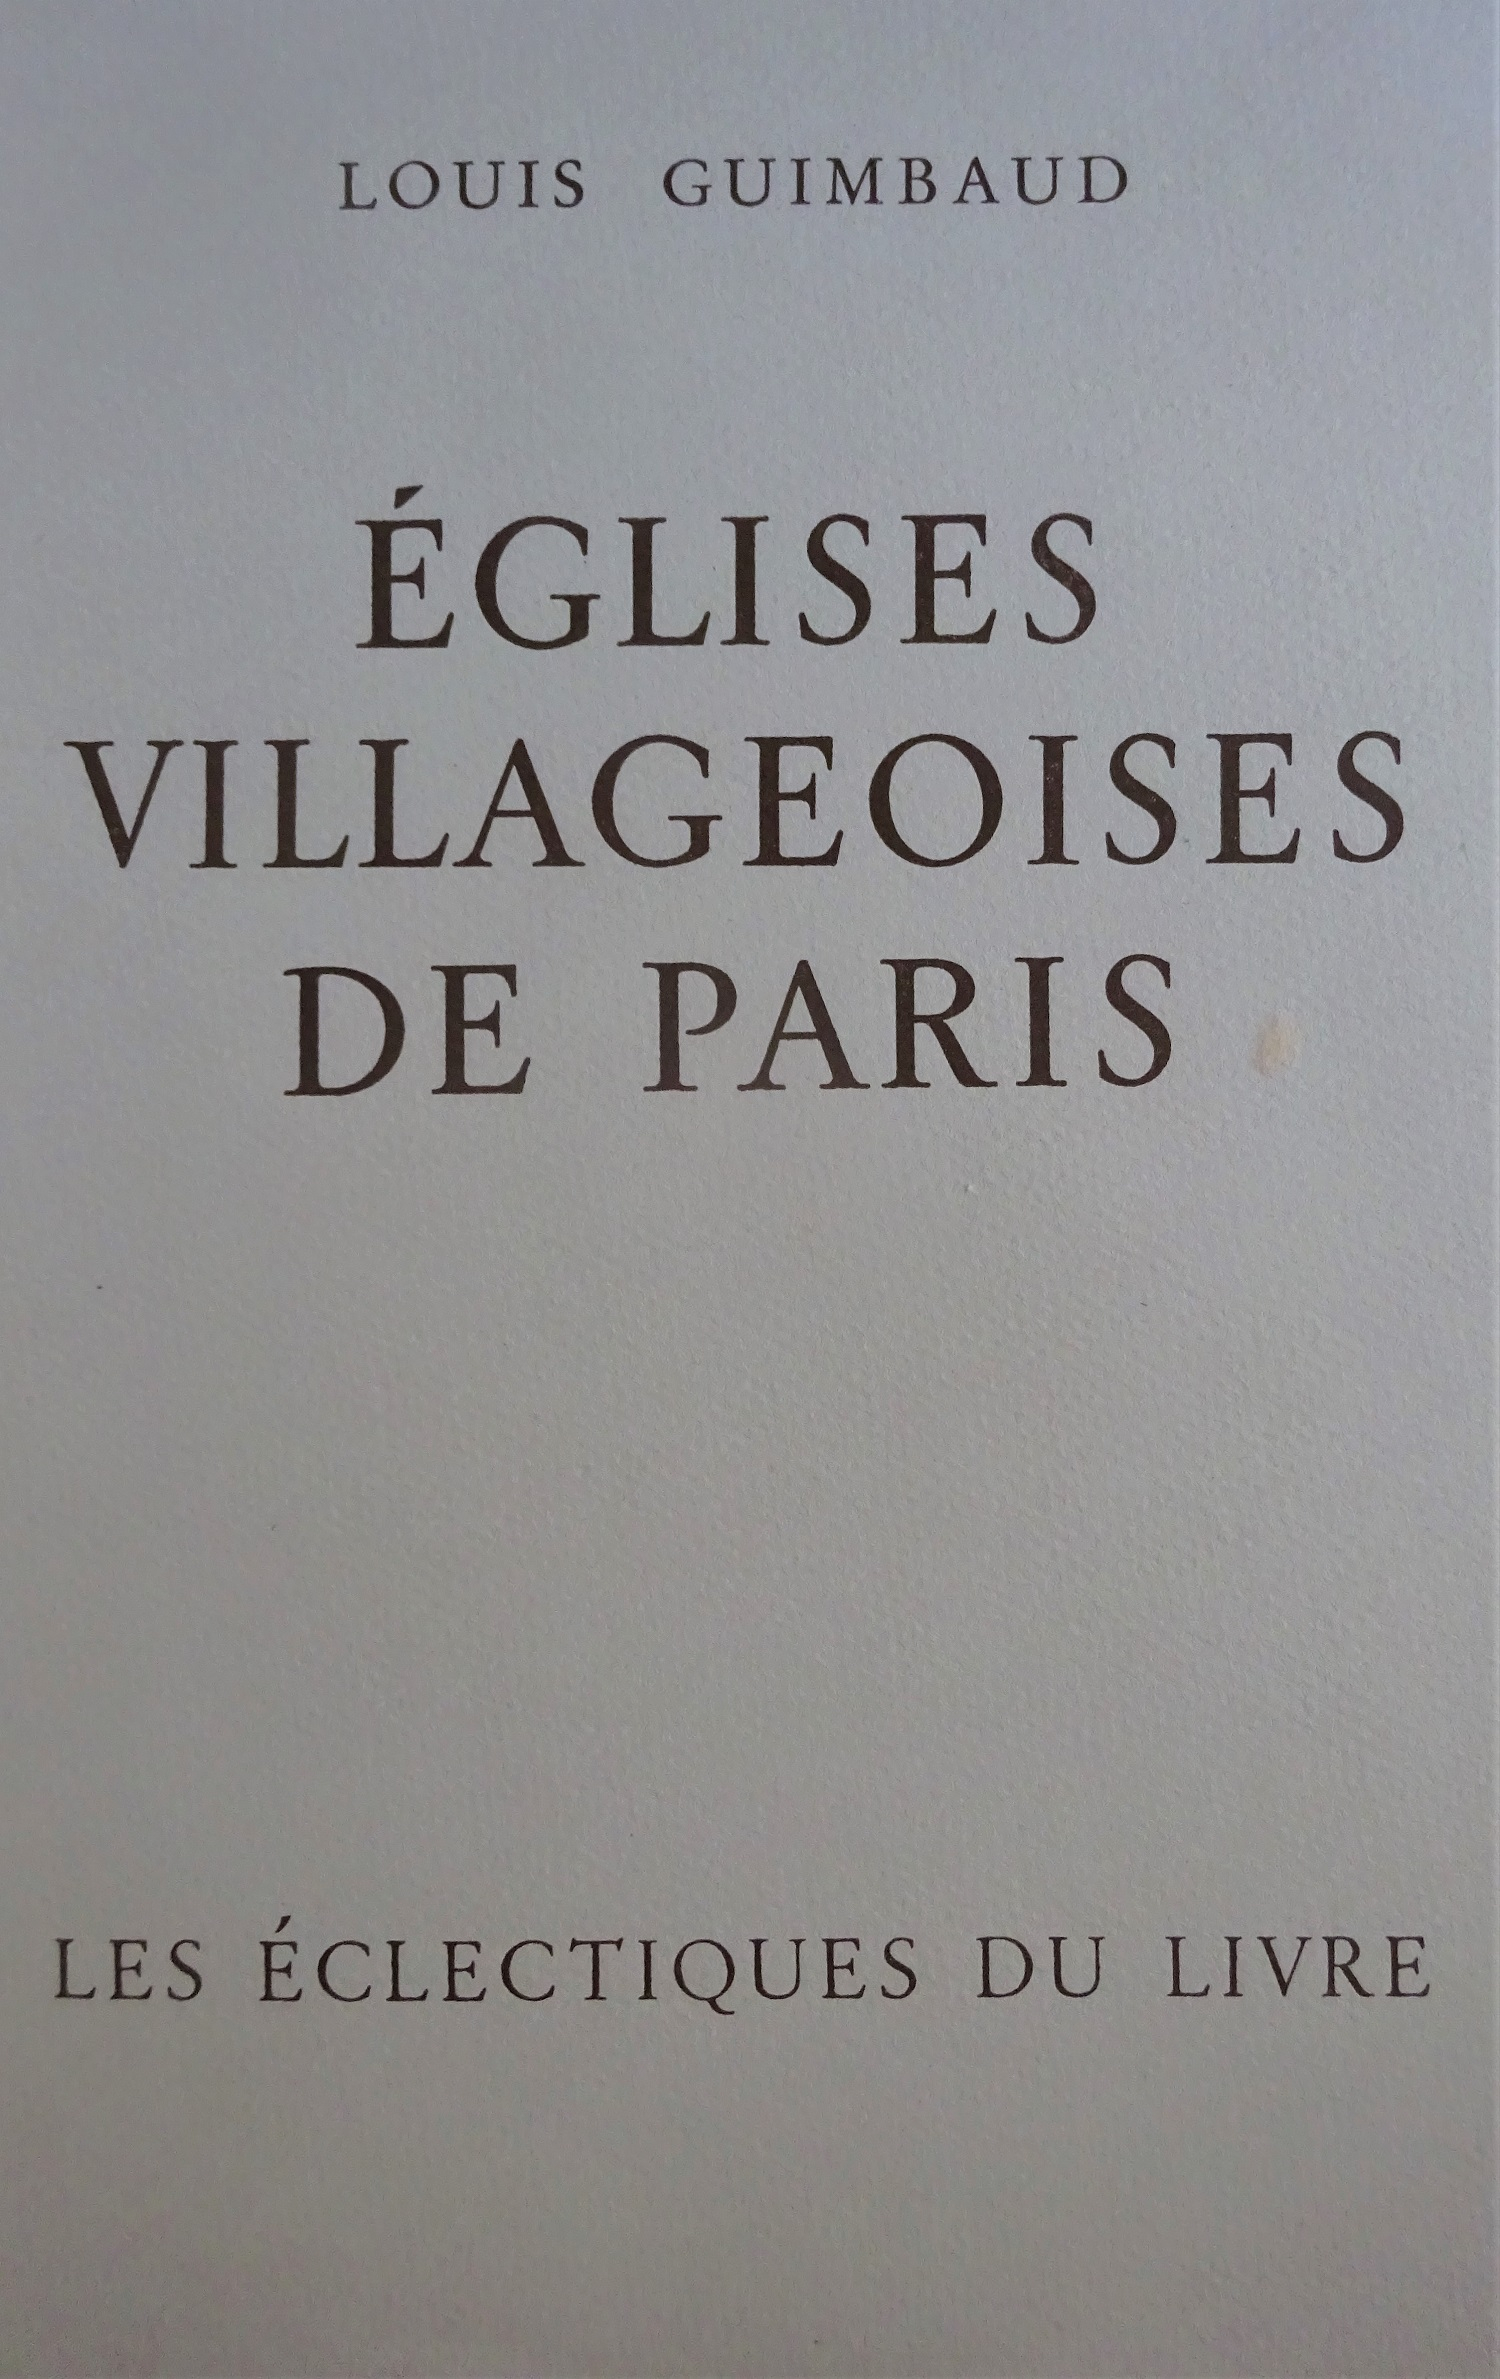 Eglises villageoises de Paris